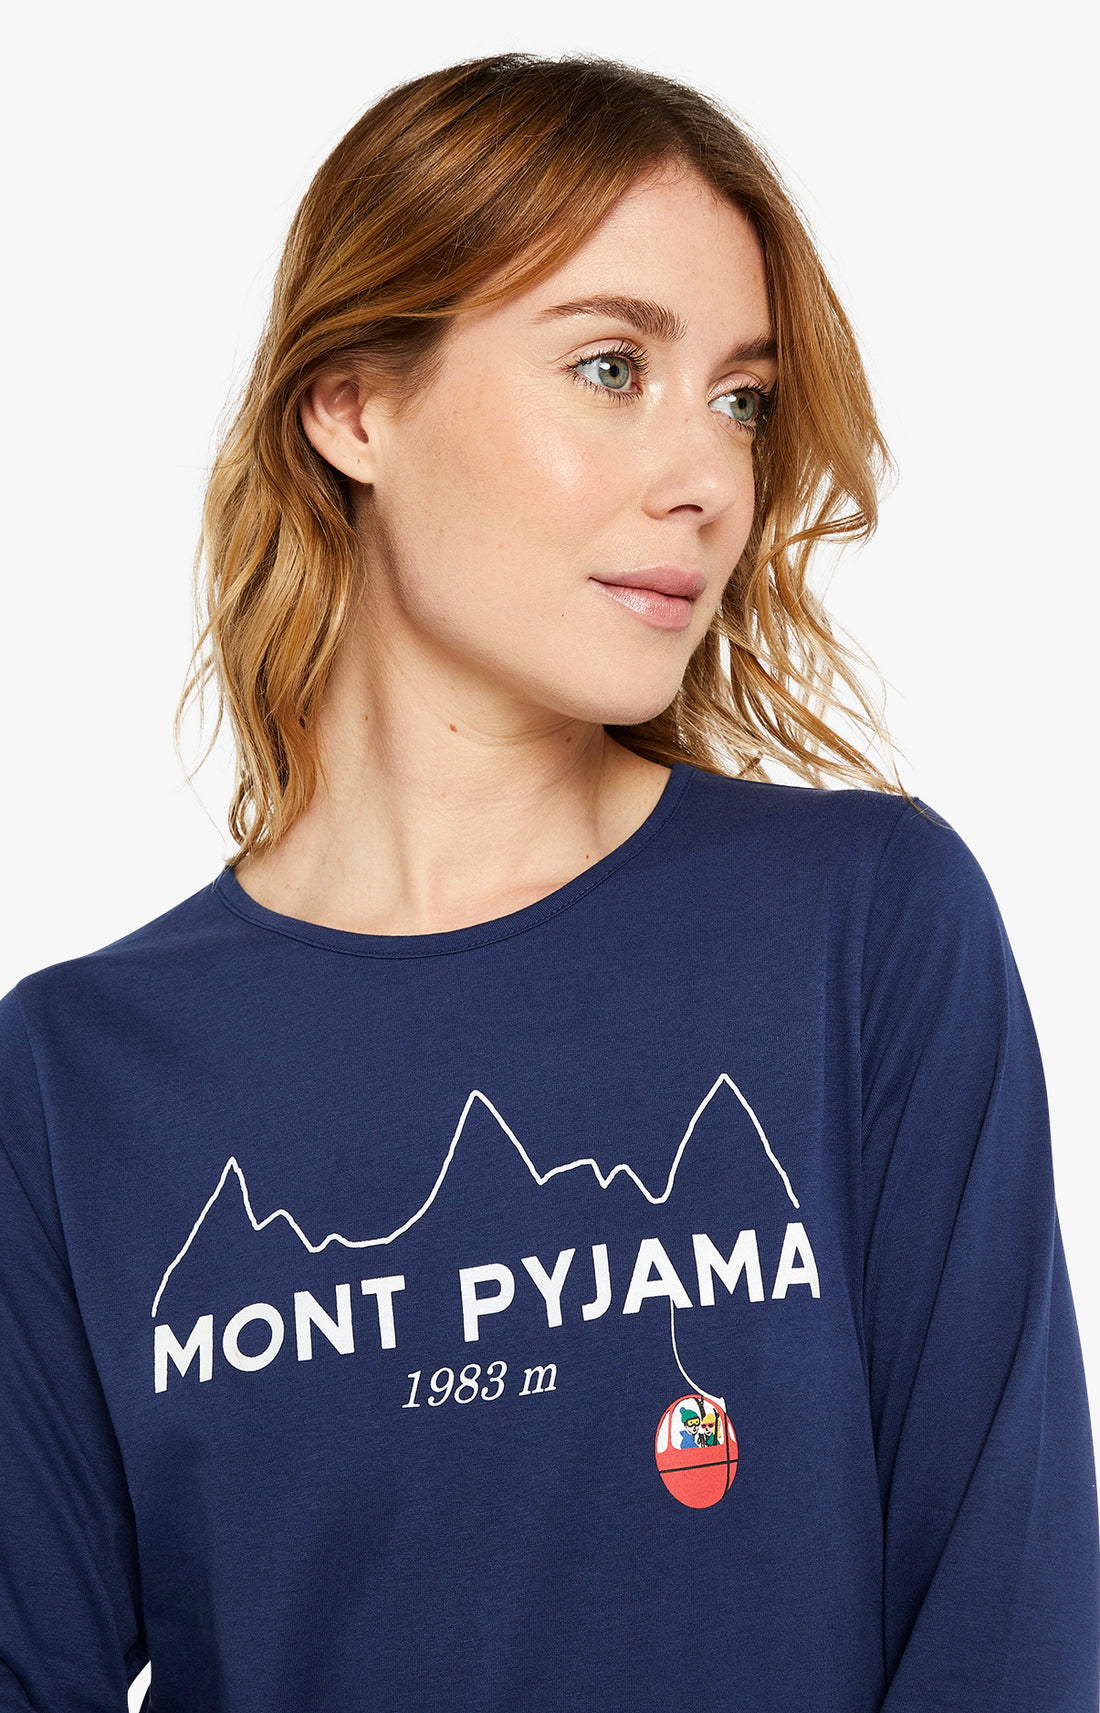 Pyjama - Mont Pyjama 6